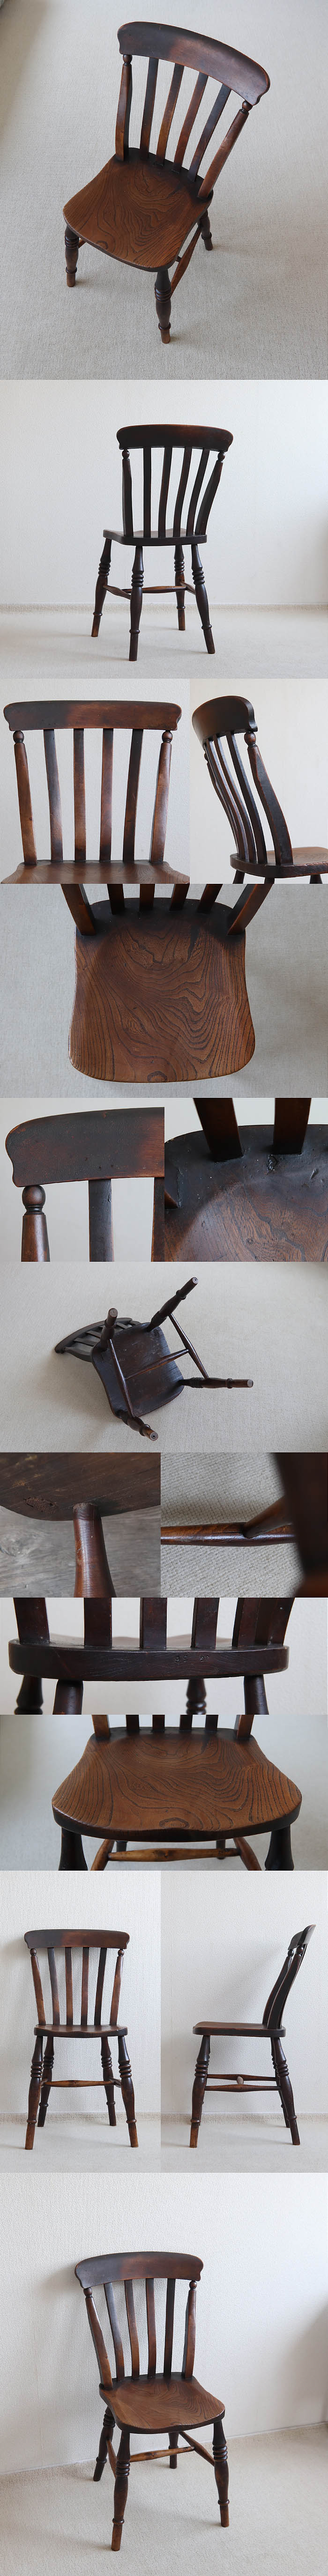 イギリス アンティーク ラスバックチェア キッチンチェア 木製椅子 古木 カントリー V-077